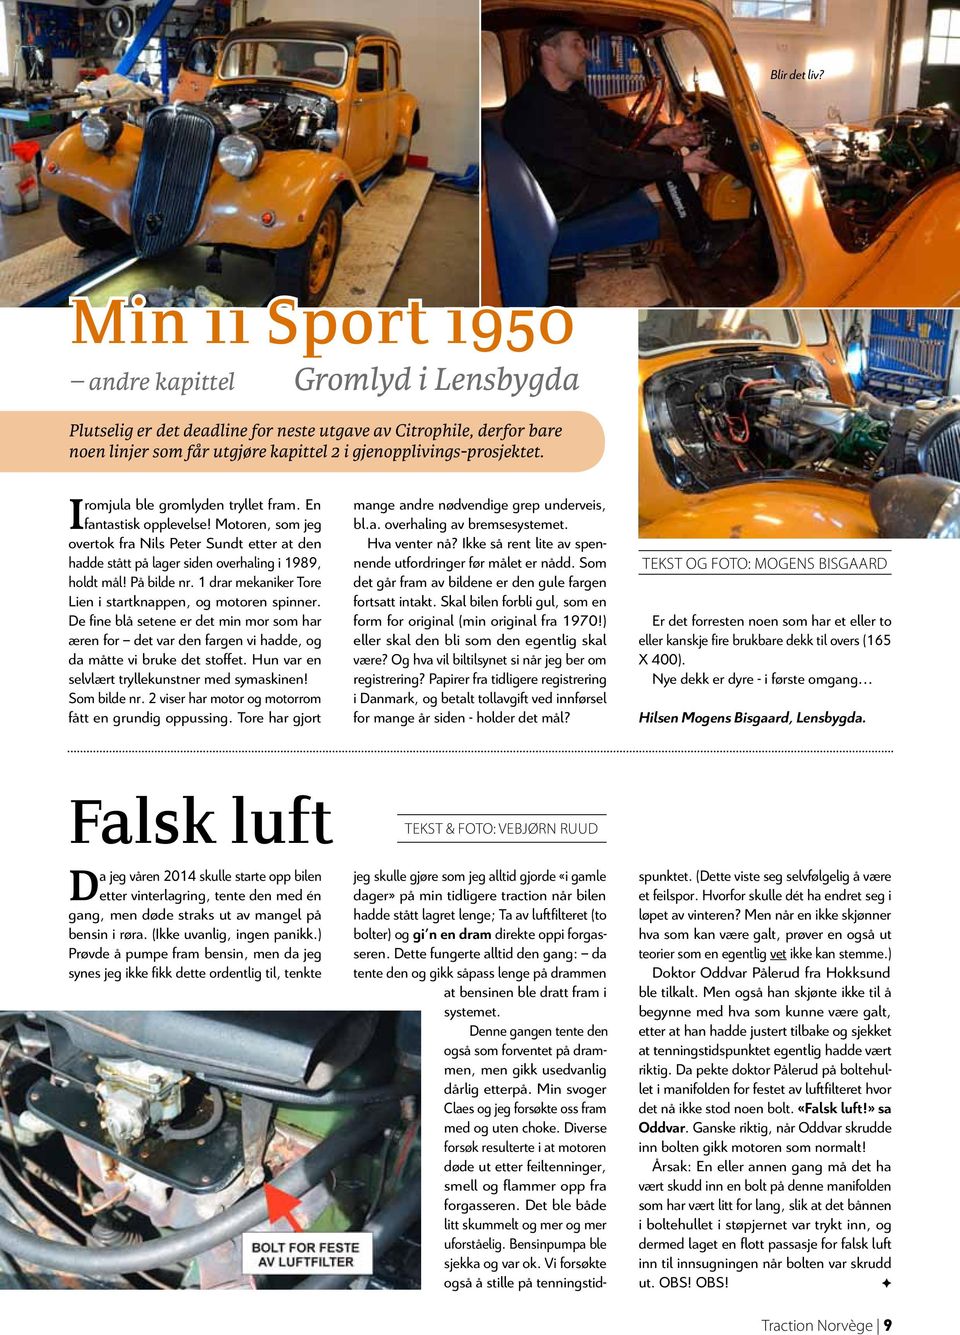 tryllet fra En I fantastisk opplevelse! Motor, so jeg overtok fra Nils Peter Sundt etter at d hadde stått på lager sid overhaling i 1989, holdt ål!